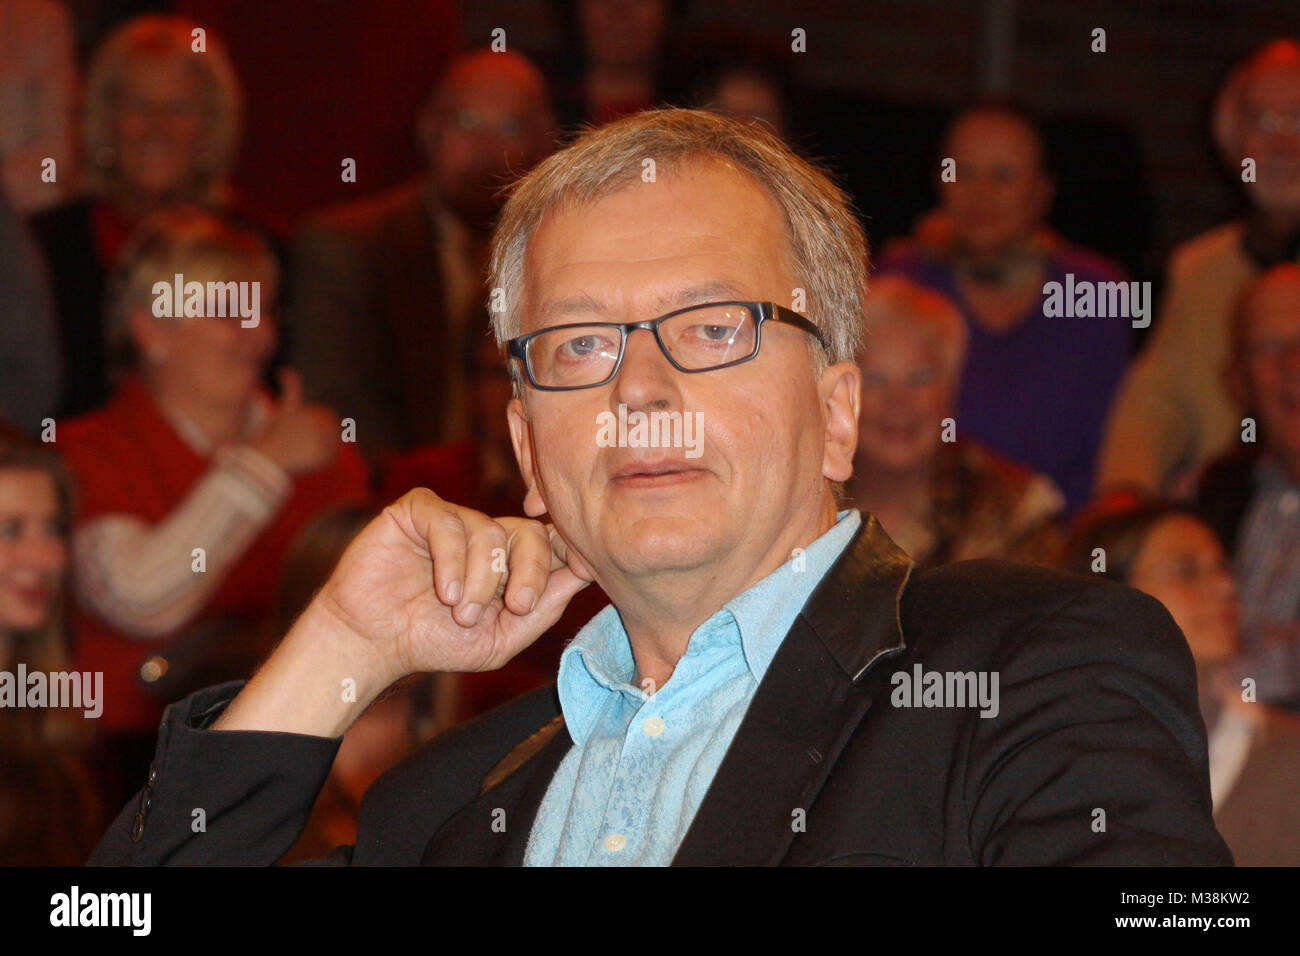 Hans Zippert (Publizist, Satiriker), Aufzeichnung von der 'Markus Lanz' Talkshow (Ausstrahlunbg am 01.11.2012), Hamburg, 30.10.2012 Stock Photo